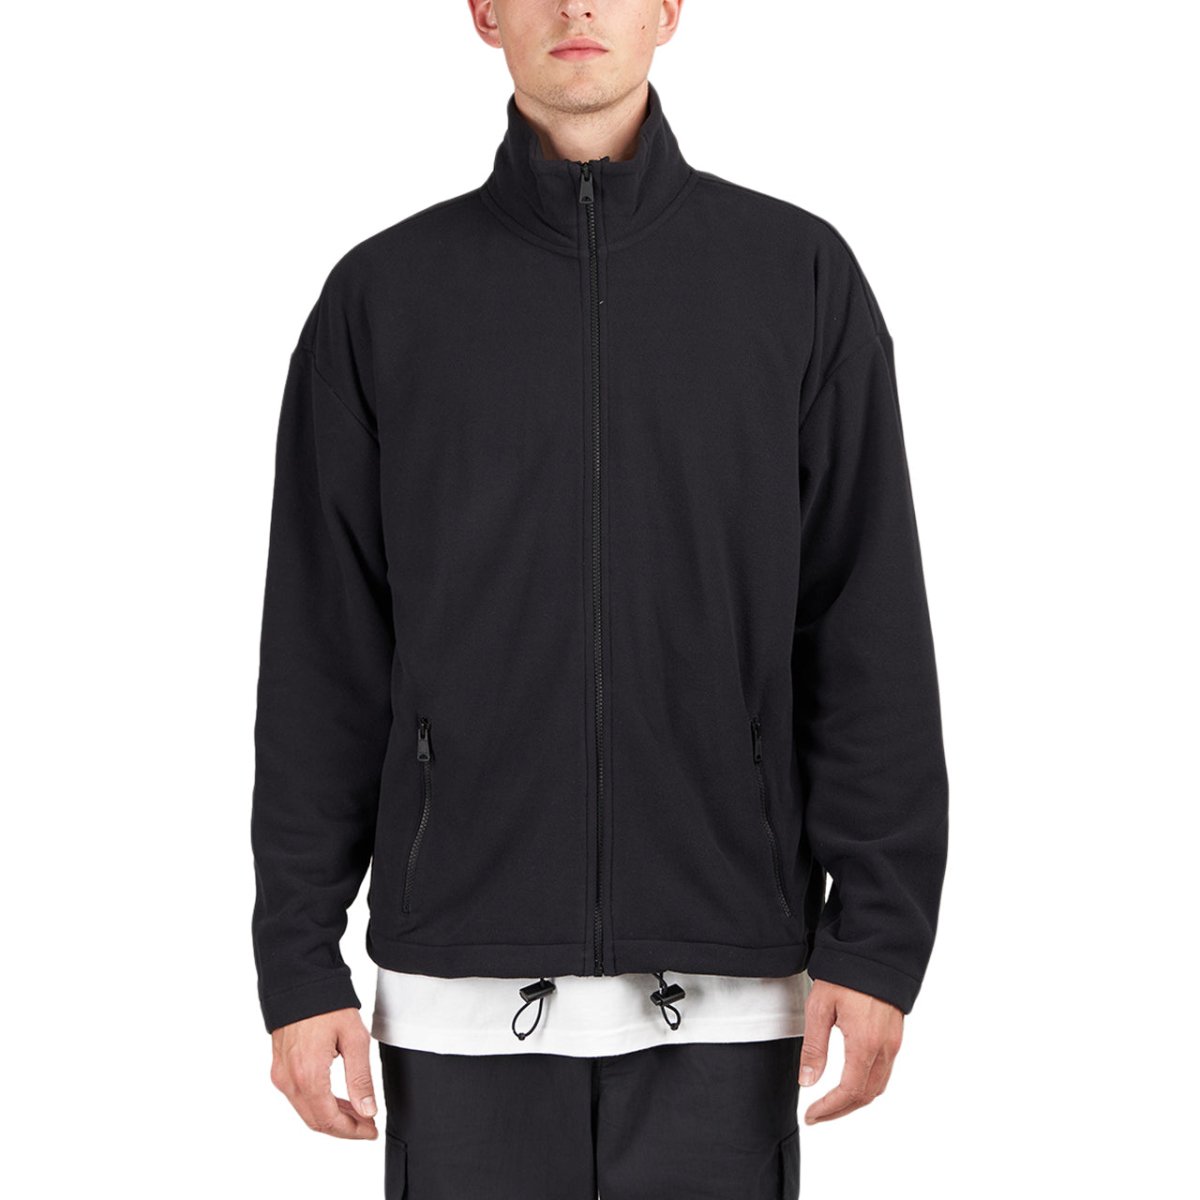 ding Ik geloof Verbeteren Napapijri x Patta FZ Fleece Jacket (Black) - NP0A4GBY0411 – Allike Store